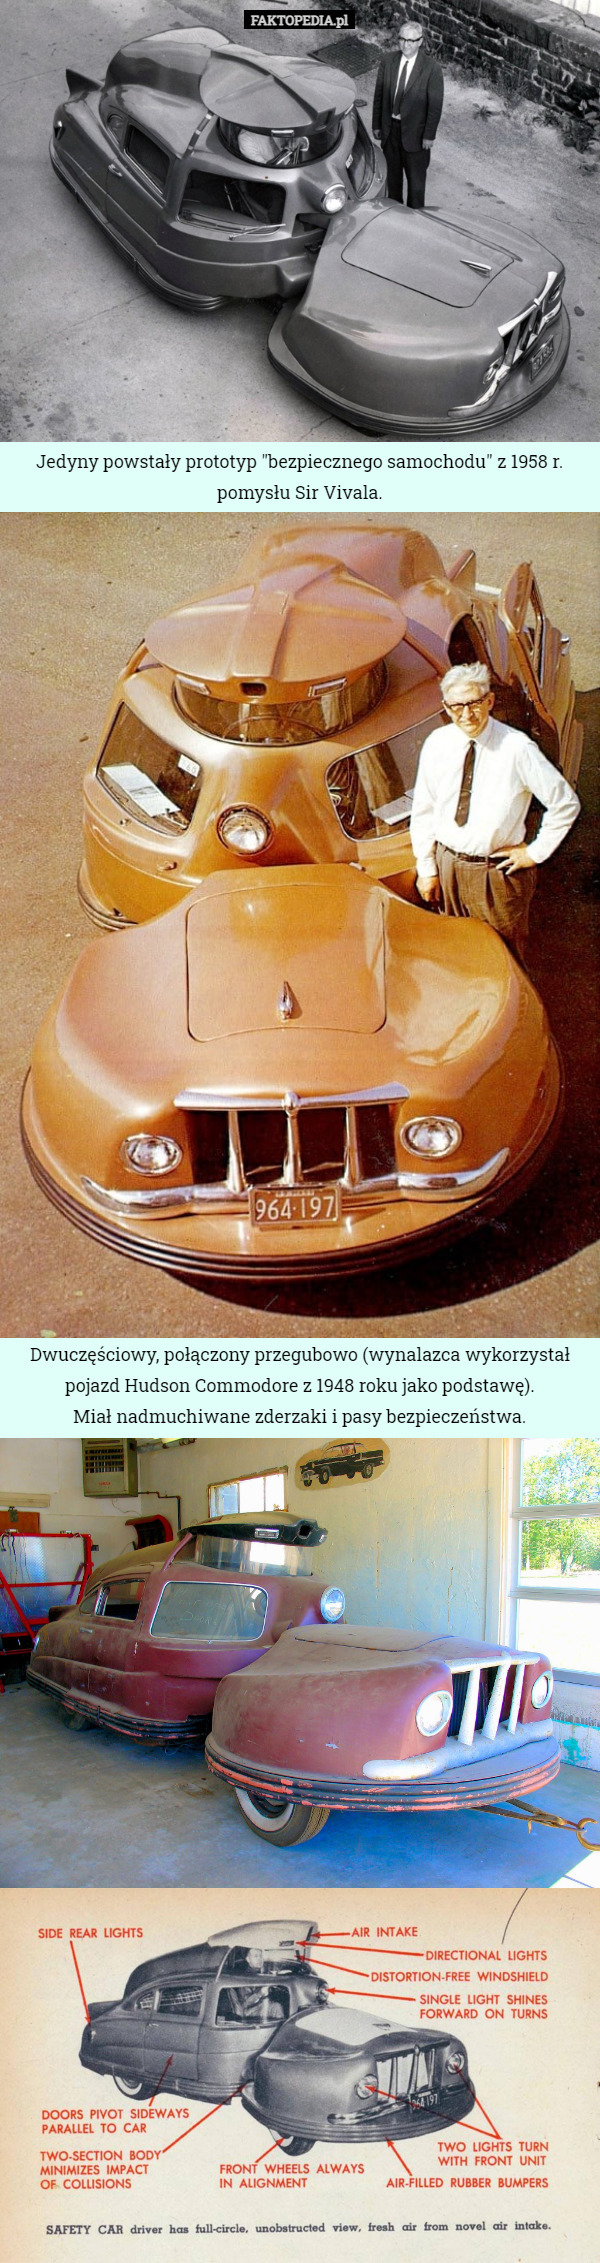 Jedyny powstały prototyp "bezpiecznego samochodu" z 1958 r. pomysłu Sir Vivala. Dwuczęściowy, połączony przegubowo (wynalazca wykorzystał pojazd Hudson Commodore z 1948 roku jako podstawę).
 Miał nadmuchiwane zderzaki i pasy bezpieczeństwa. 